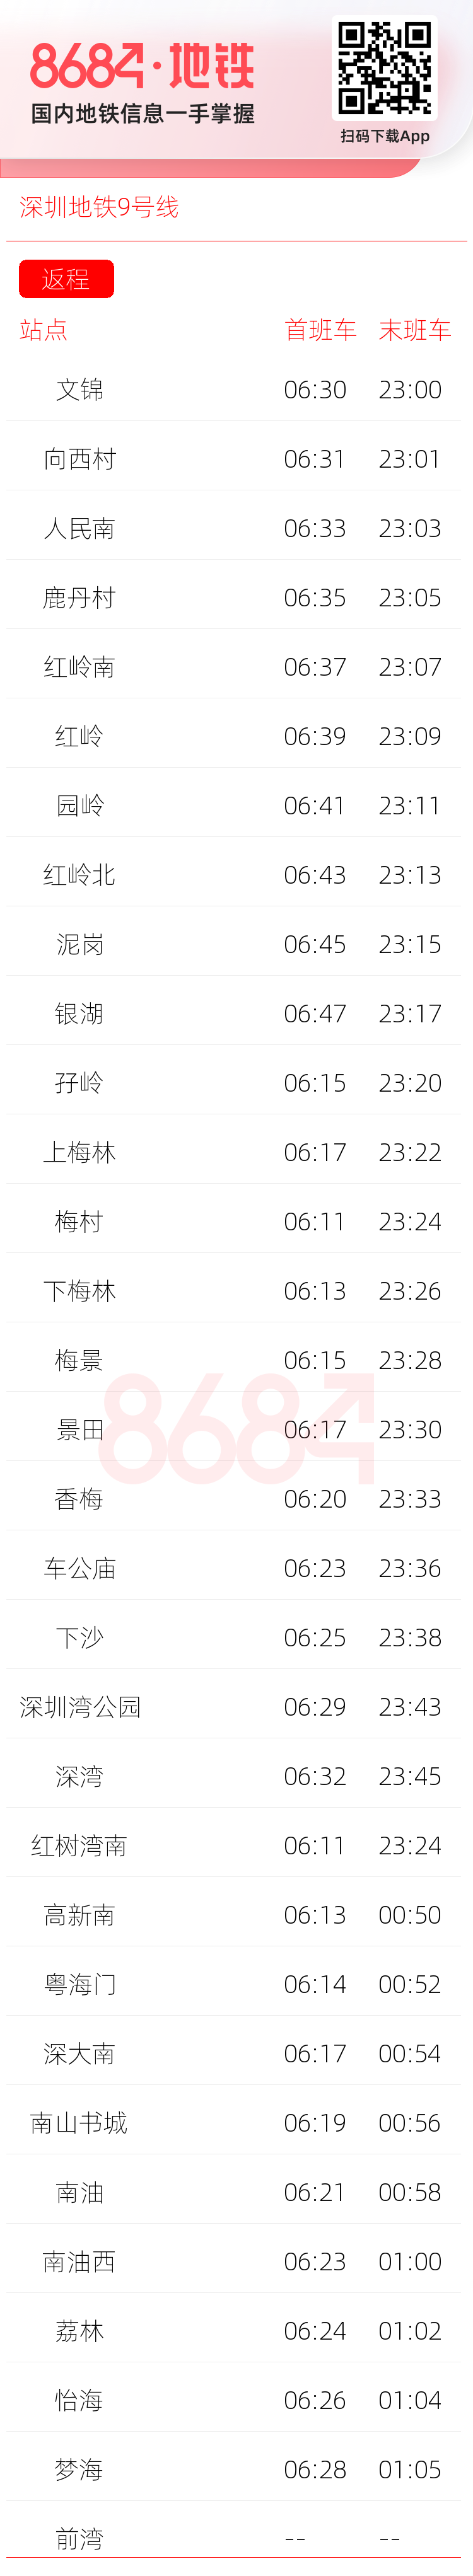 深圳地铁9号线运营时间表